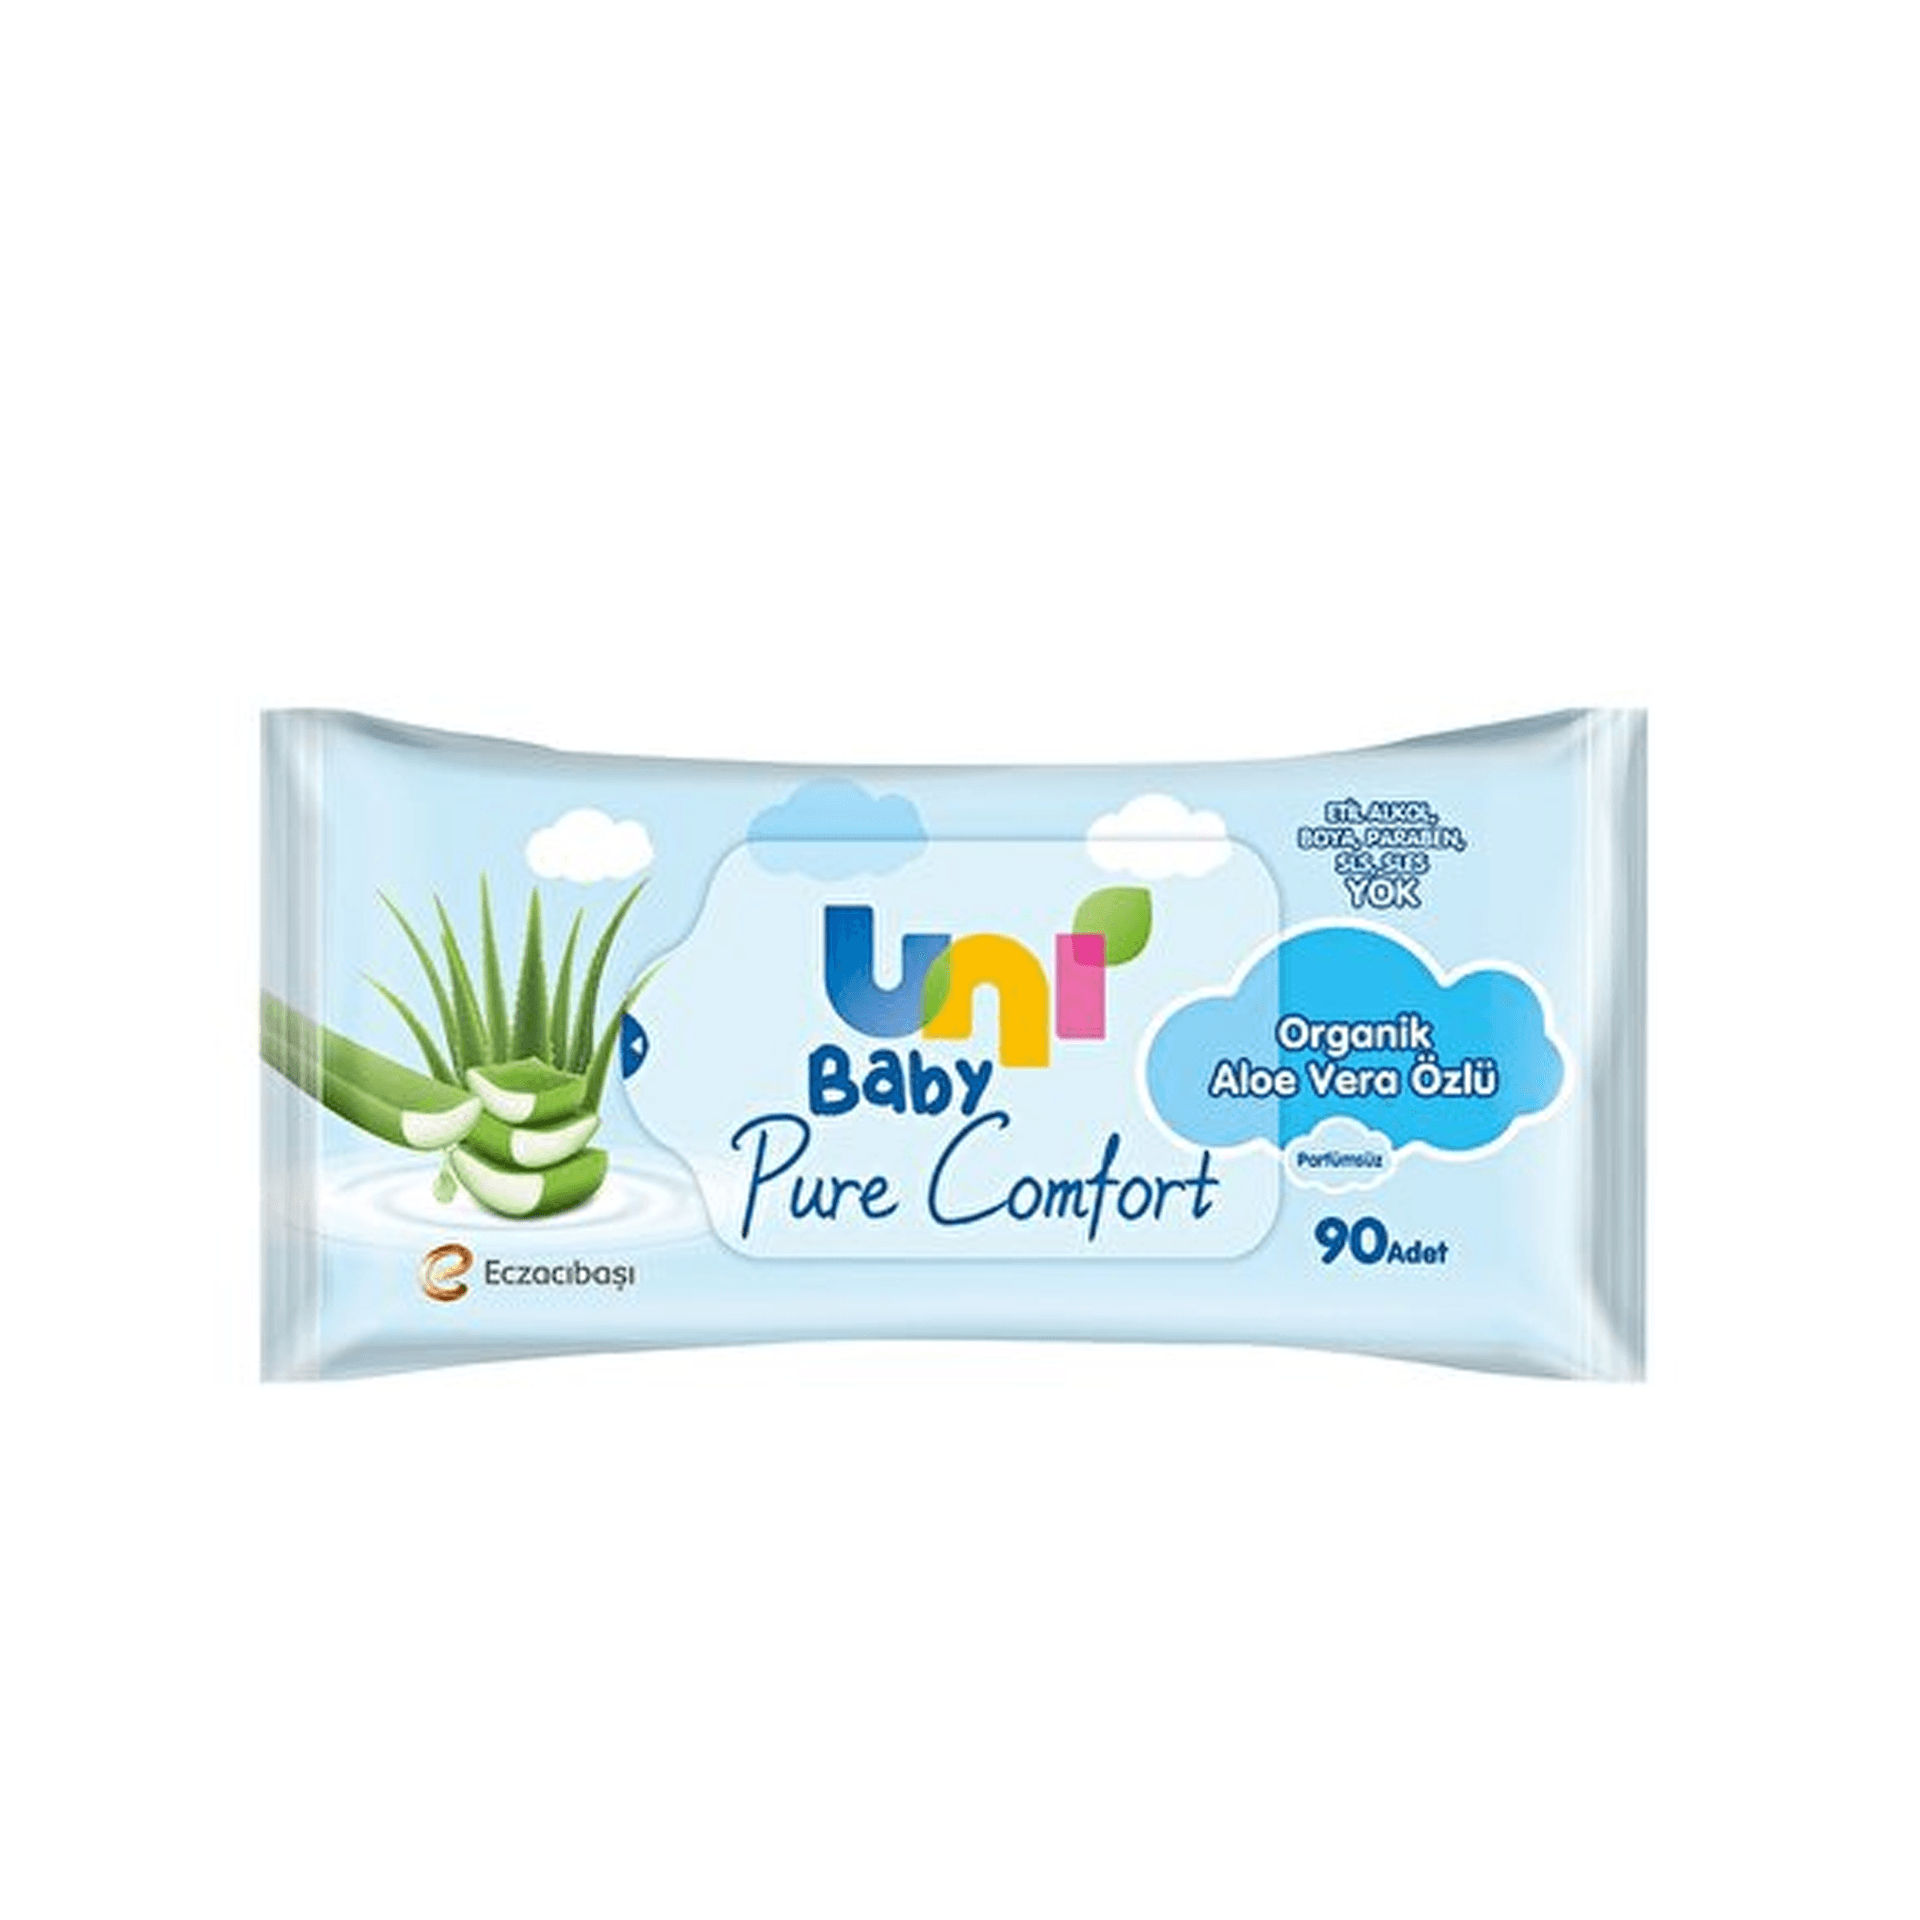 Uni Baby Pure Comfort Organik Aloe Vera Özlü Islak Mendil 24'lü 2160 Yaprak